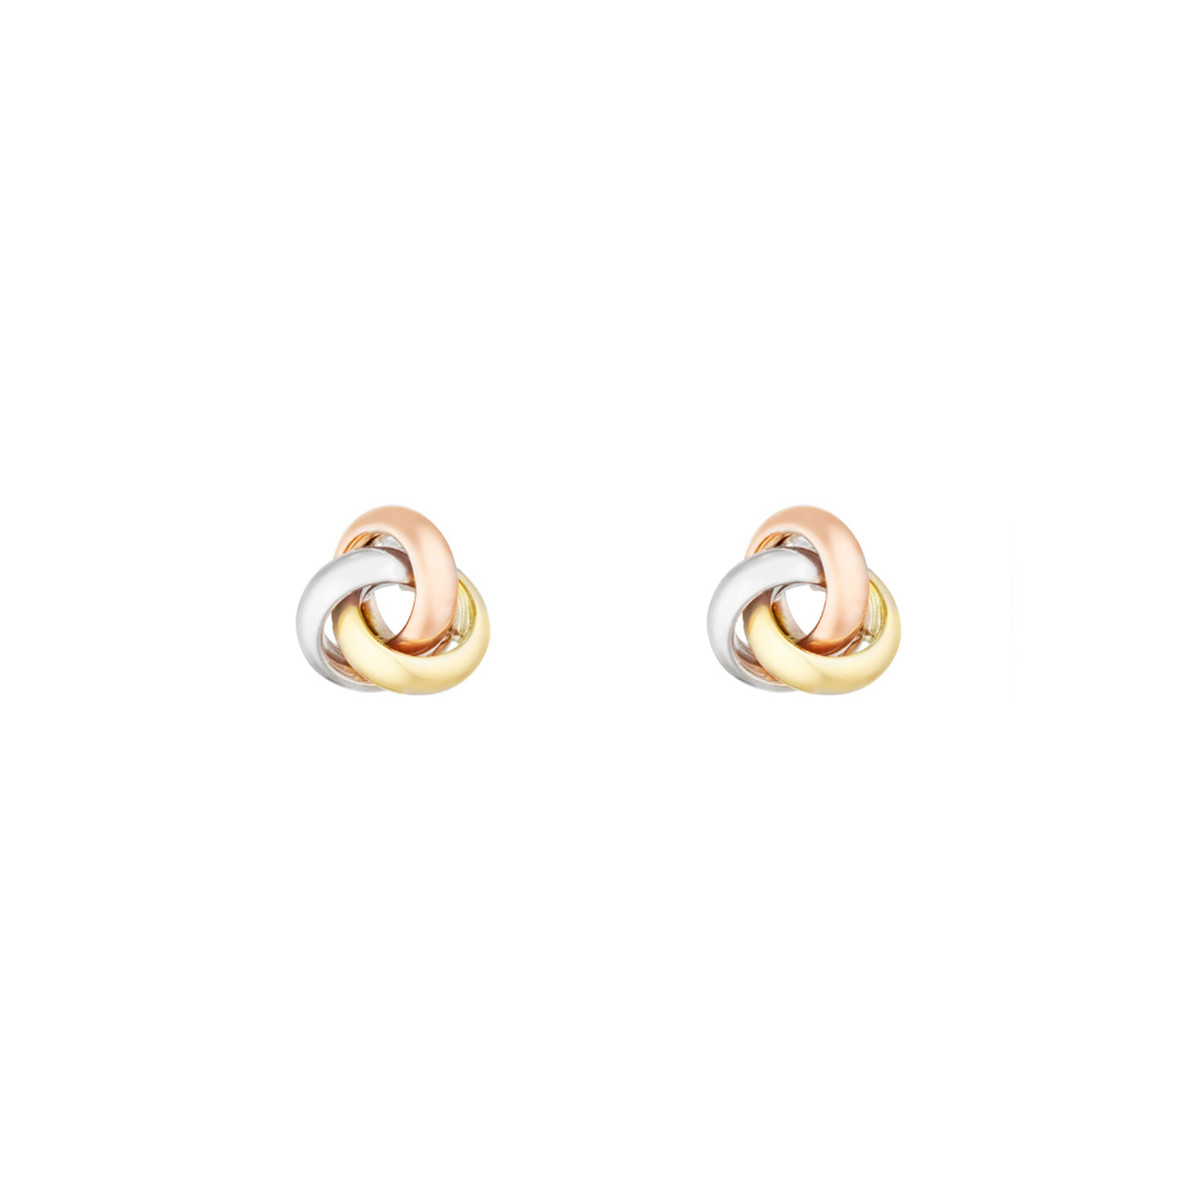 Boucles d'oreilles or tricolore "Noeud tricolore"